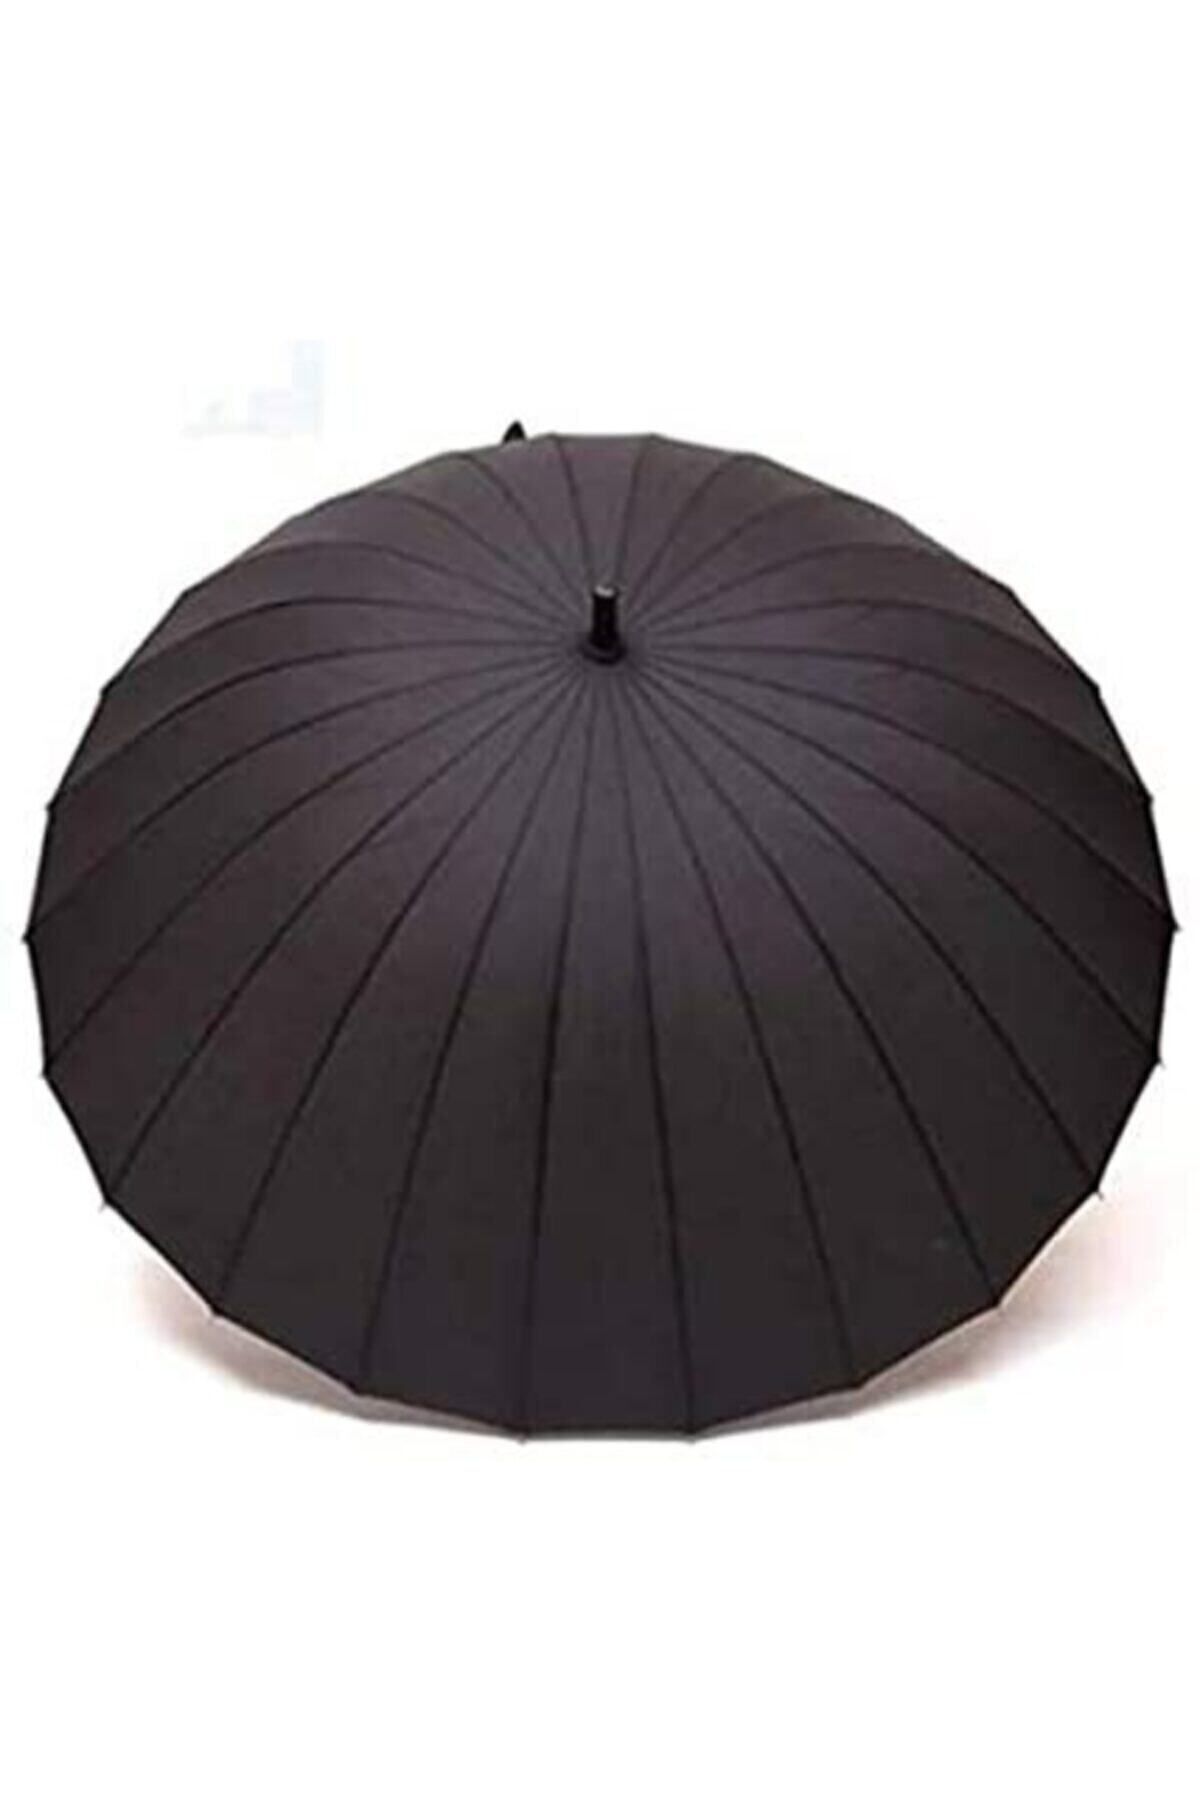 Kinary Çoban Şemsiye Protokol 24 Telli Fiber Şemsiye 120 Cm Fiyatı